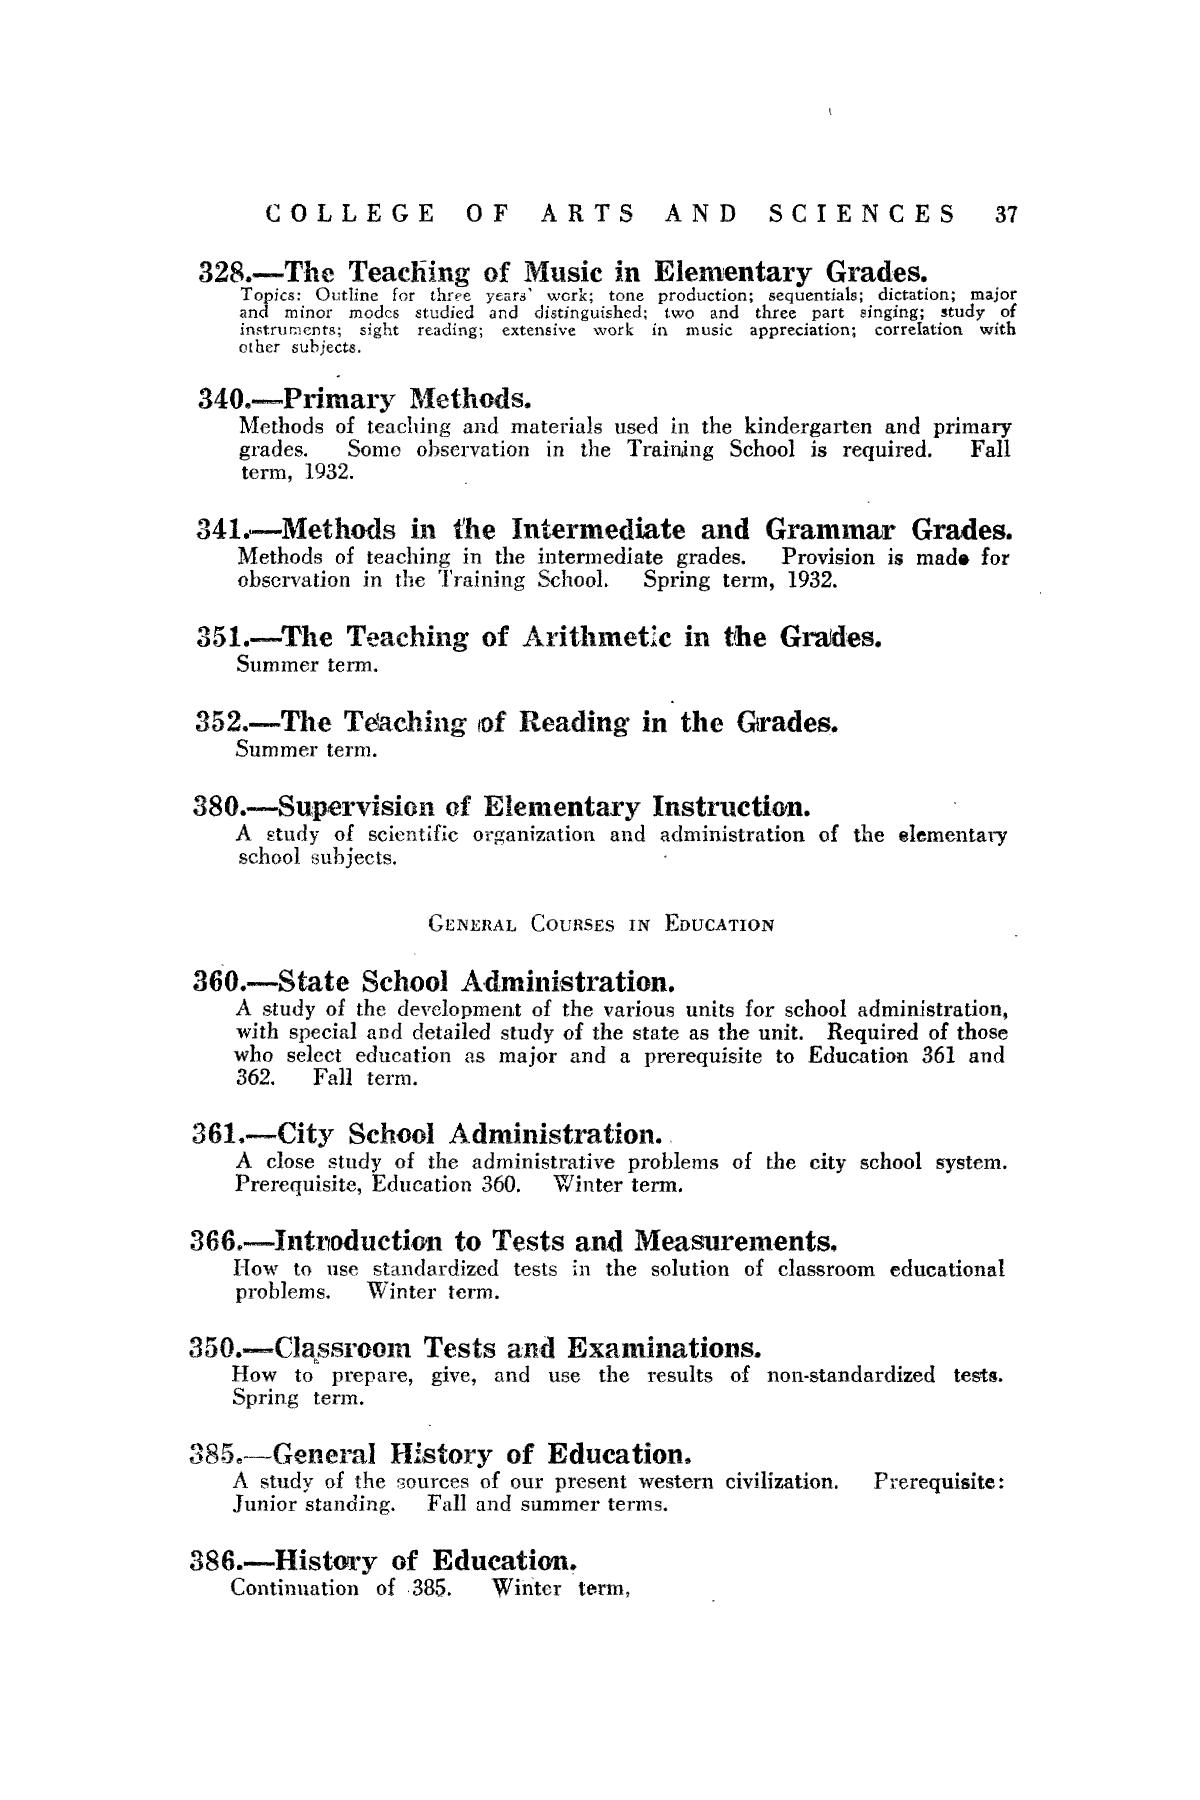 Catalog of Abilene Christian College, 1932-1933
                                                
                                                    37
                                                